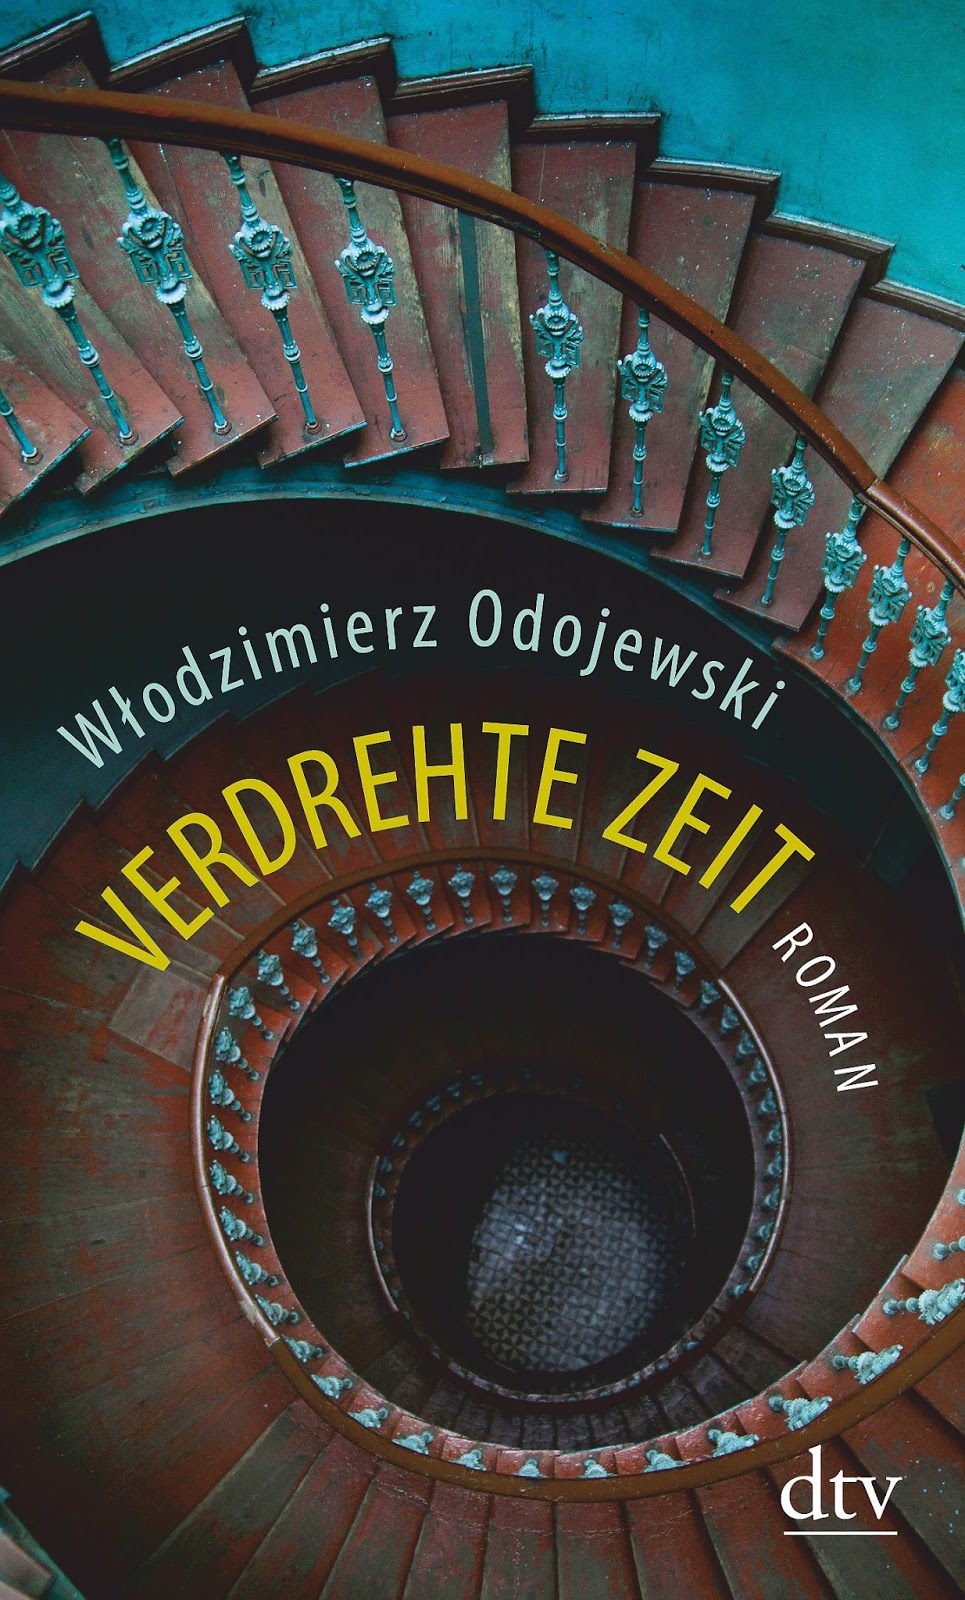 Verdrehte Zeit Wlodimierz Odojewski dtv Verlag "